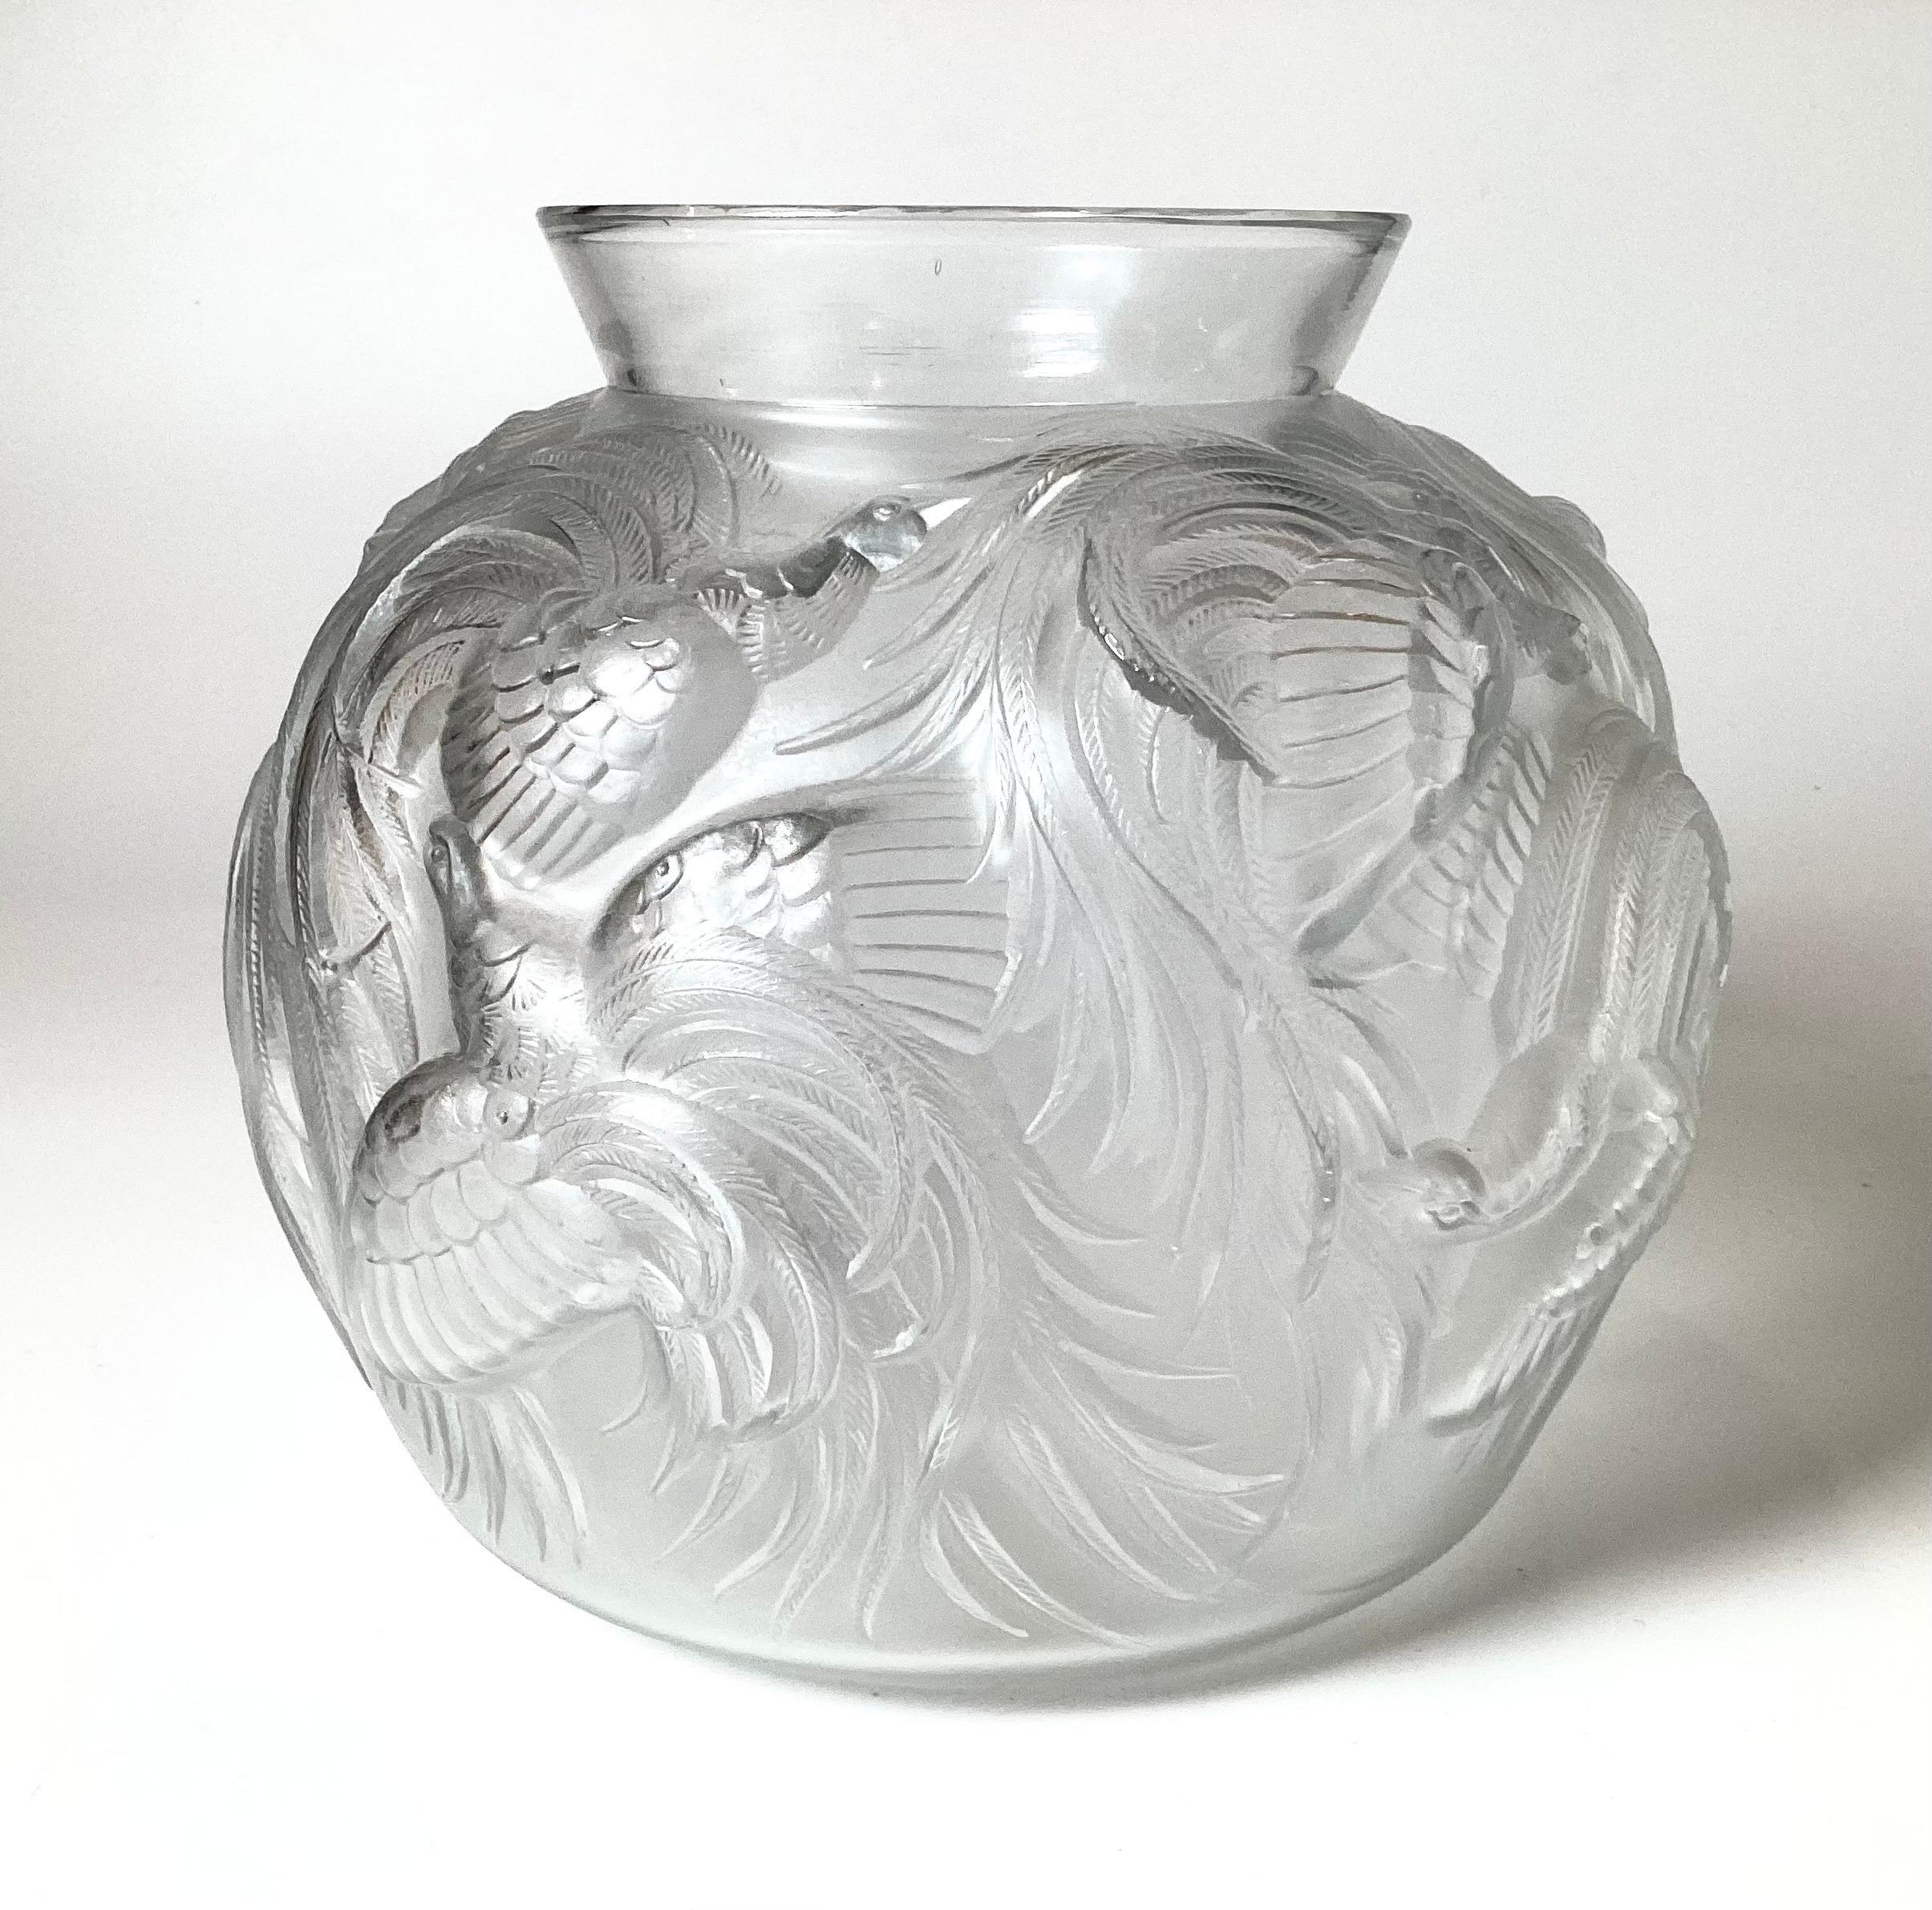 Elegante Vase aus Kunstglas mit Paradiesvögeln von Sabino aus Frankreich, ein frühes Stück aus der Produktion, signiert auf dem Sockel. Die bauchige Vase mit anmutigem Dekor auf der gesamten Oberfläche ist nach Art von Lalique mattiert.